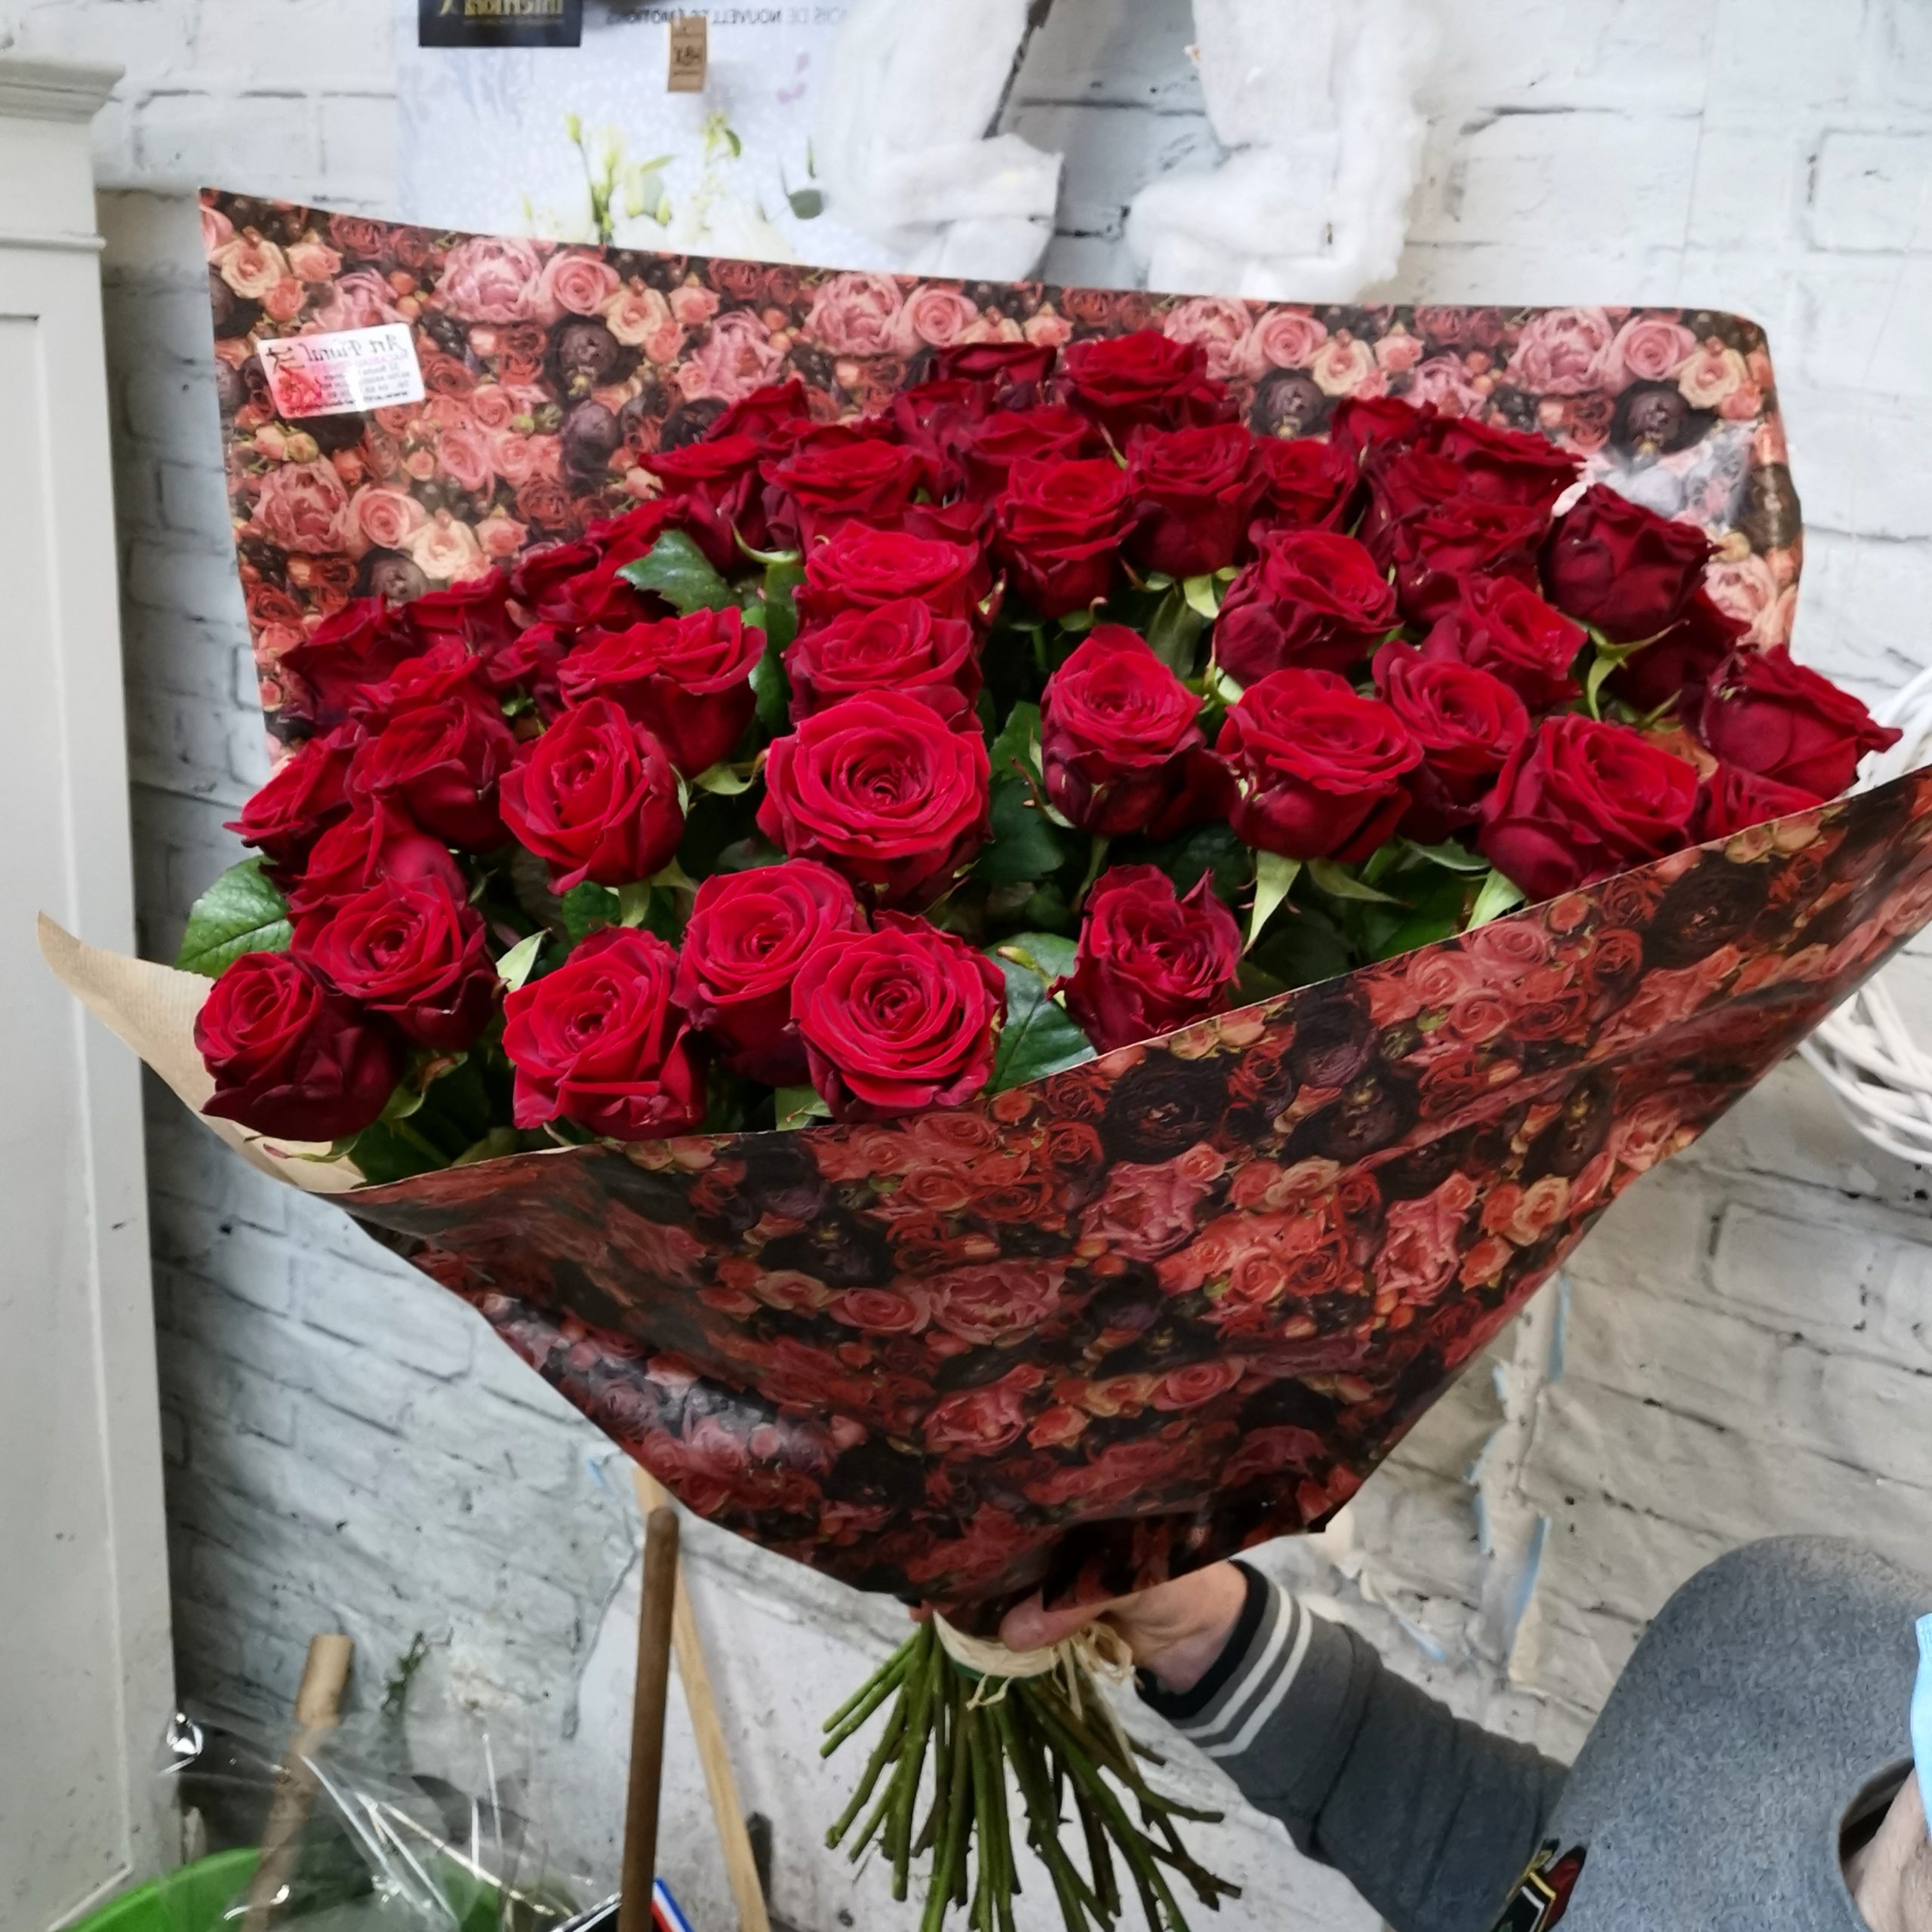 Les Bouquet de Grandes Roses Rouges ! – Art Floral Macabiau Gineste